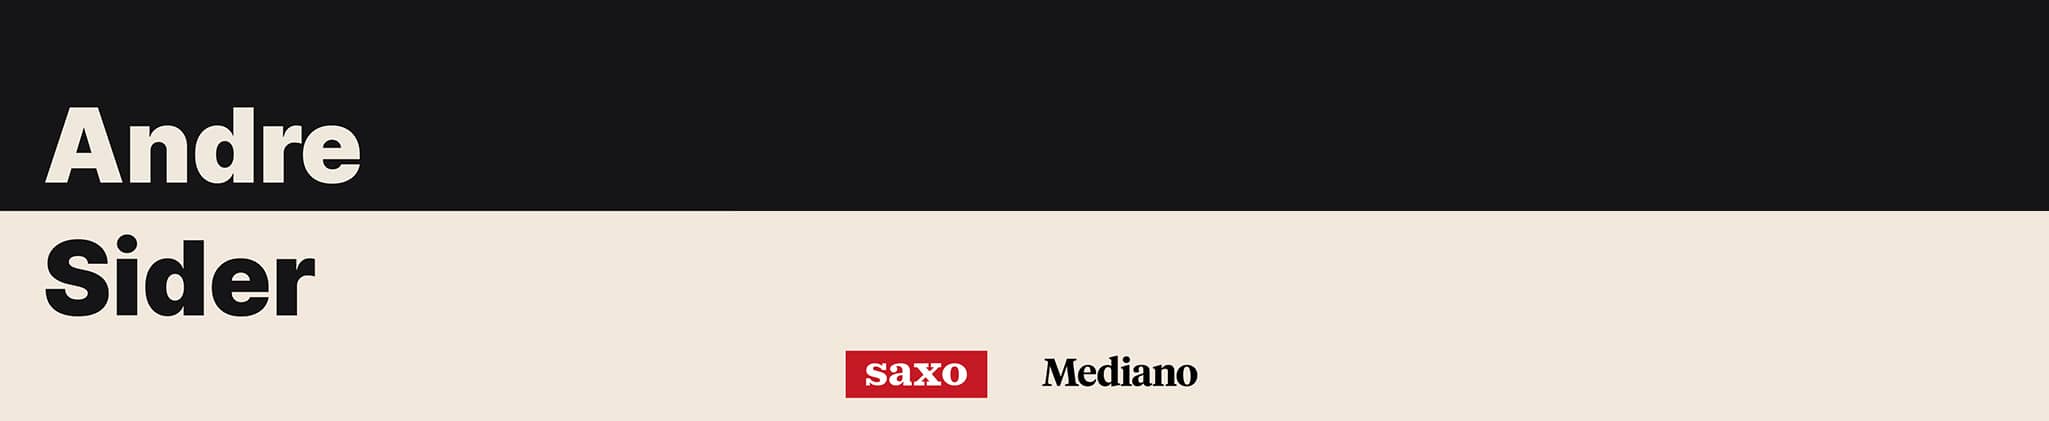 Første episode af Andre Sider - en podcast om litteratur i samarbejde mellem Saxo og Mediano